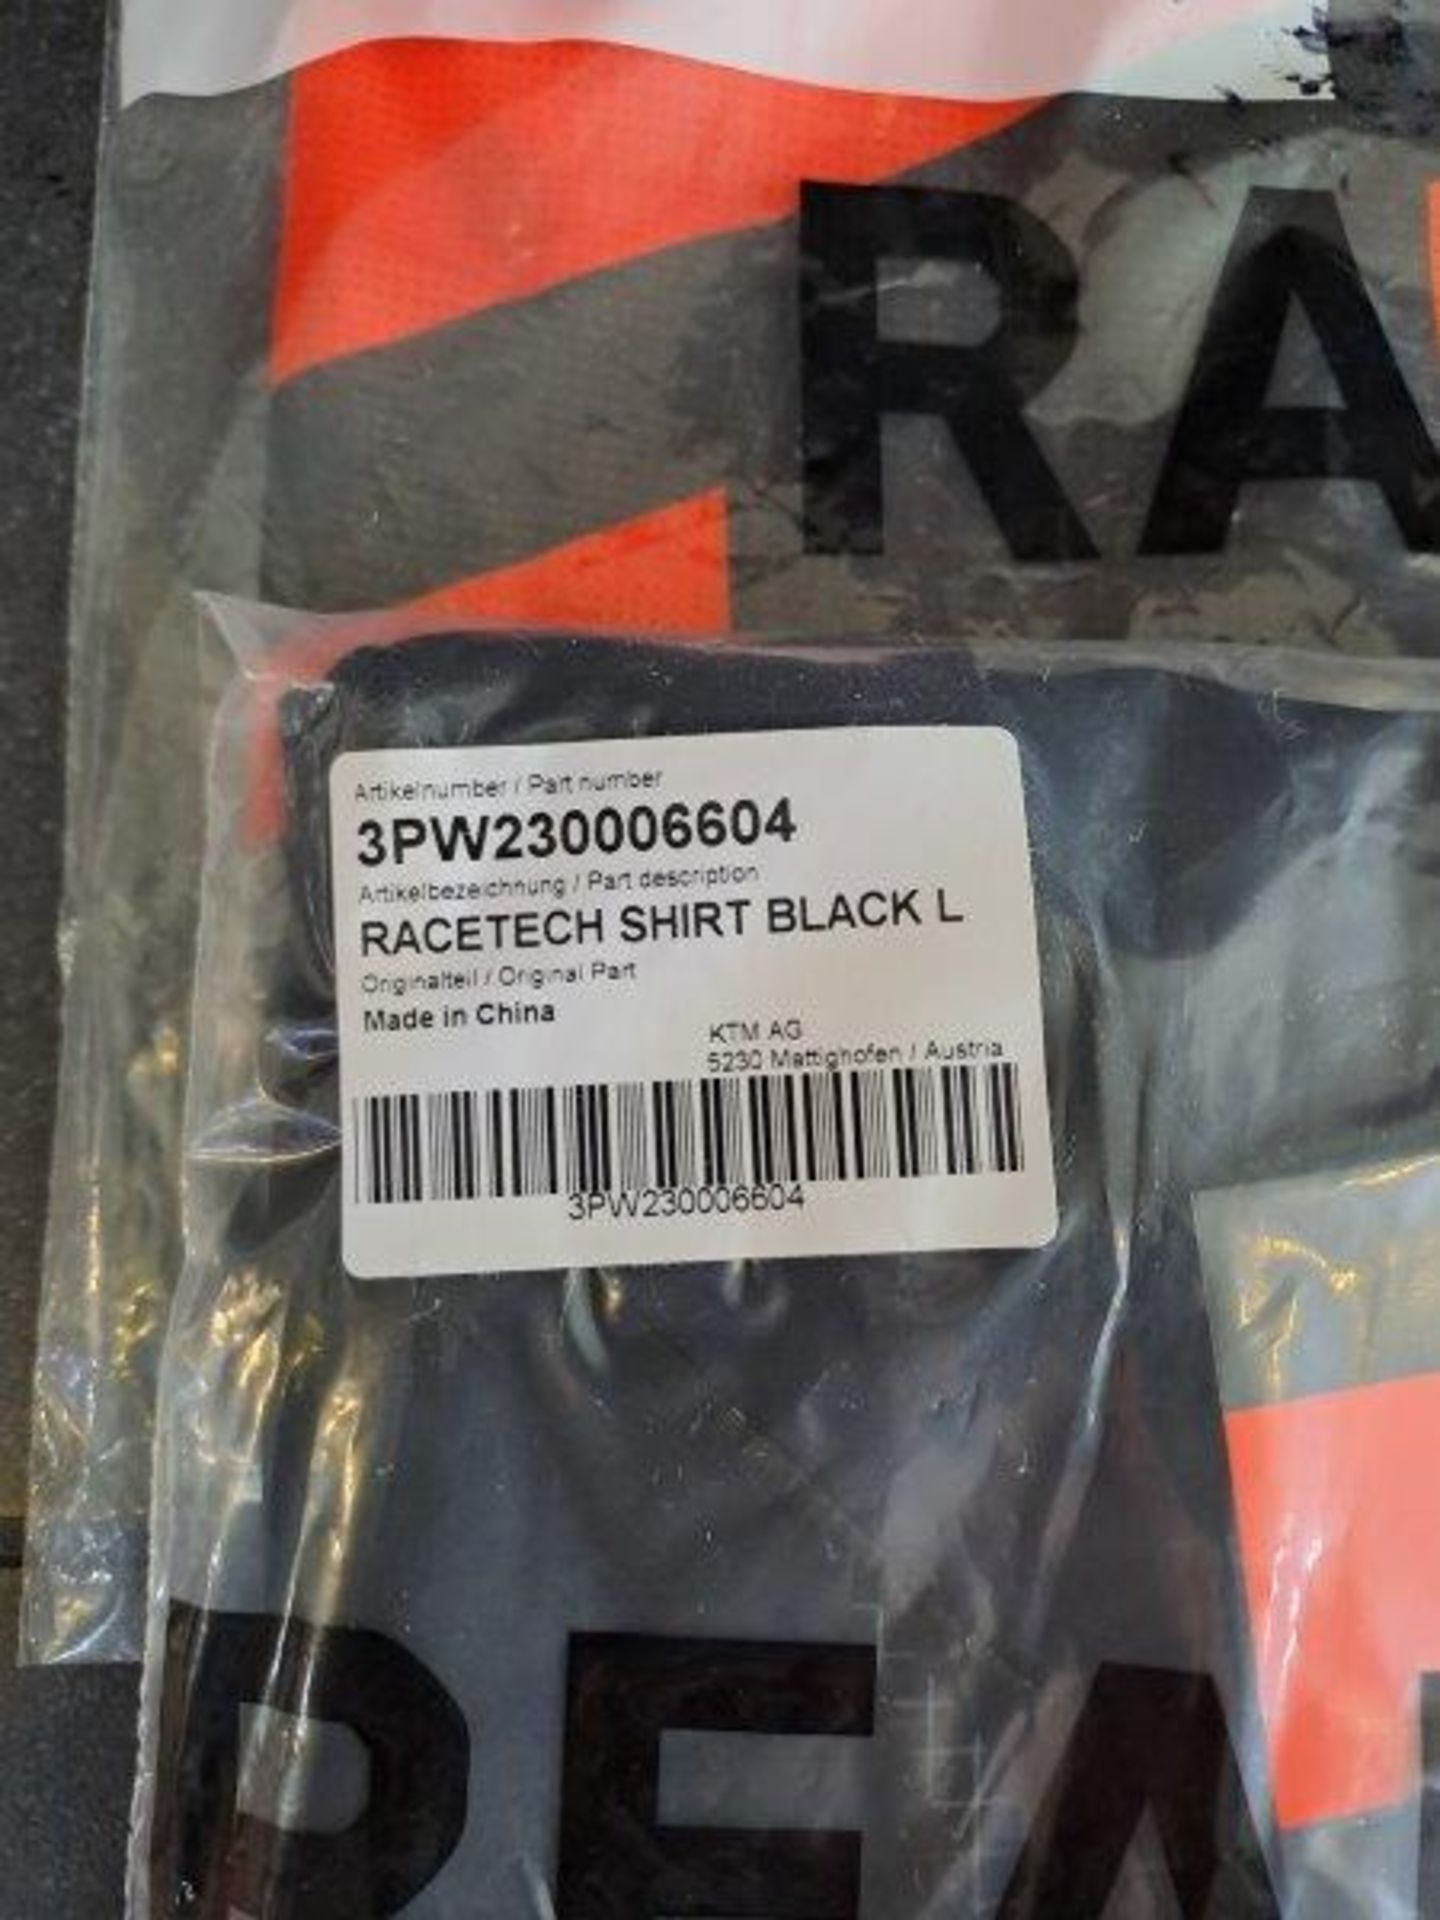 3 x KTM Shirts, Size Large - Image 3 of 7